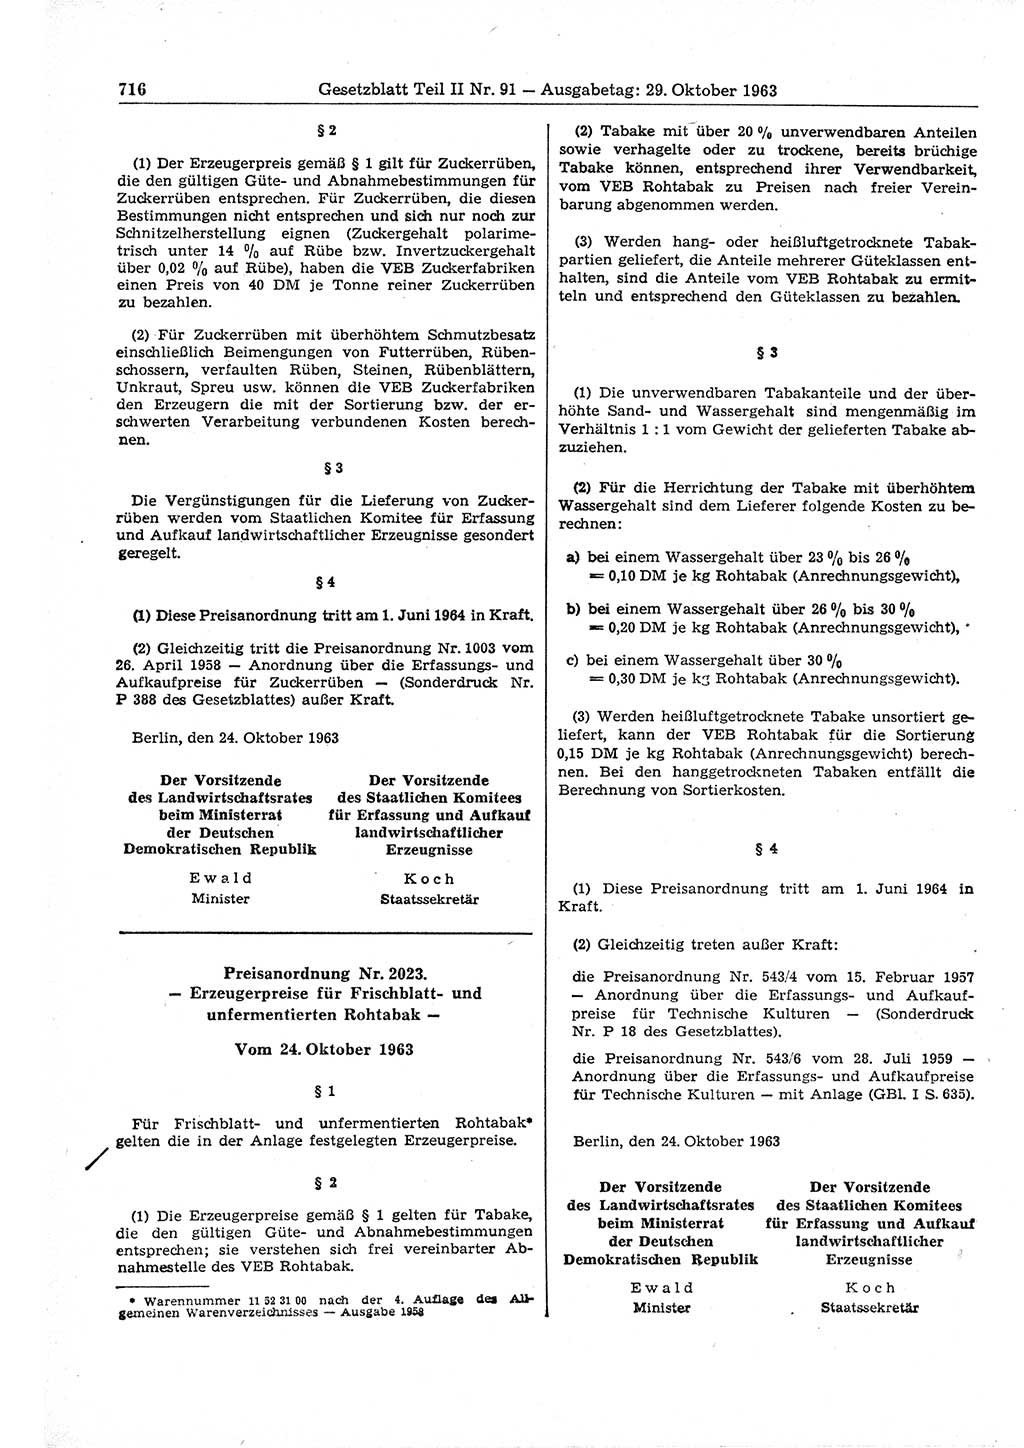 Gesetzblatt (GBl.) der Deutschen Demokratischen Republik (DDR) Teil ⅠⅠ 1963, Seite 716 (GBl. DDR ⅠⅠ 1963, S. 716)